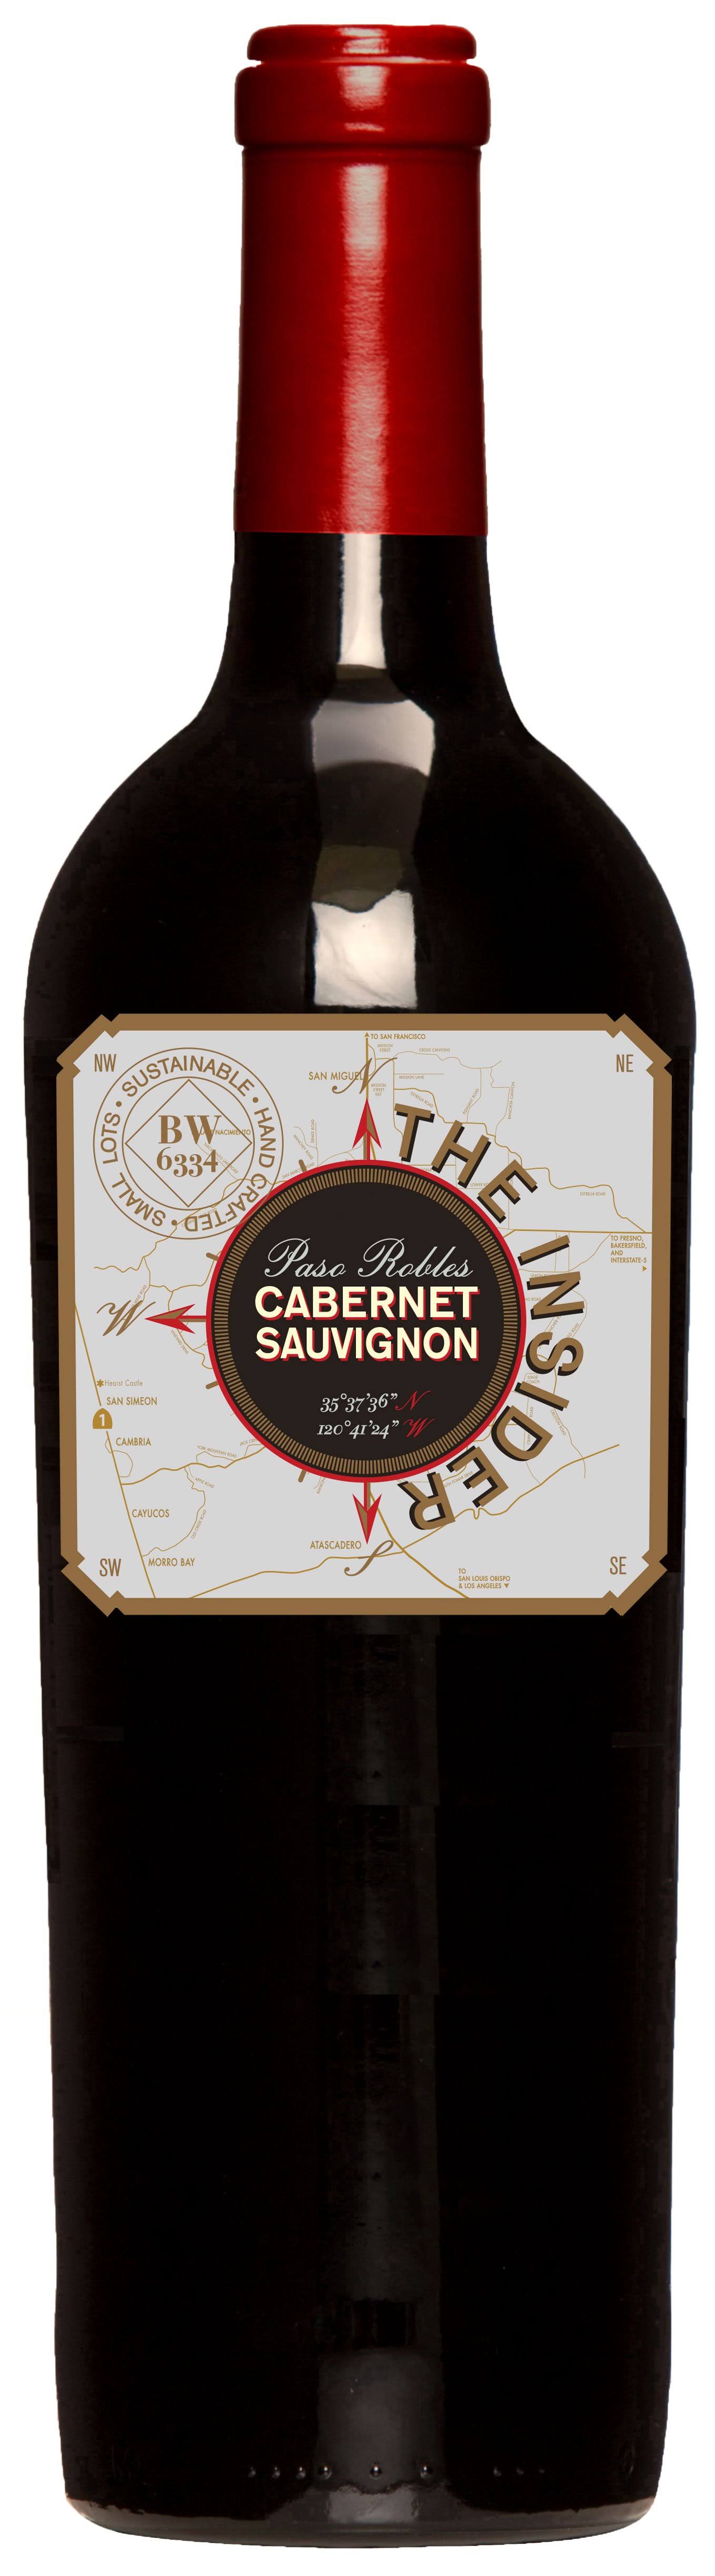 Vinum Cellars Cabernet Sauvignon, Paso Robles (Vintage Varies) - 750 ml bottle